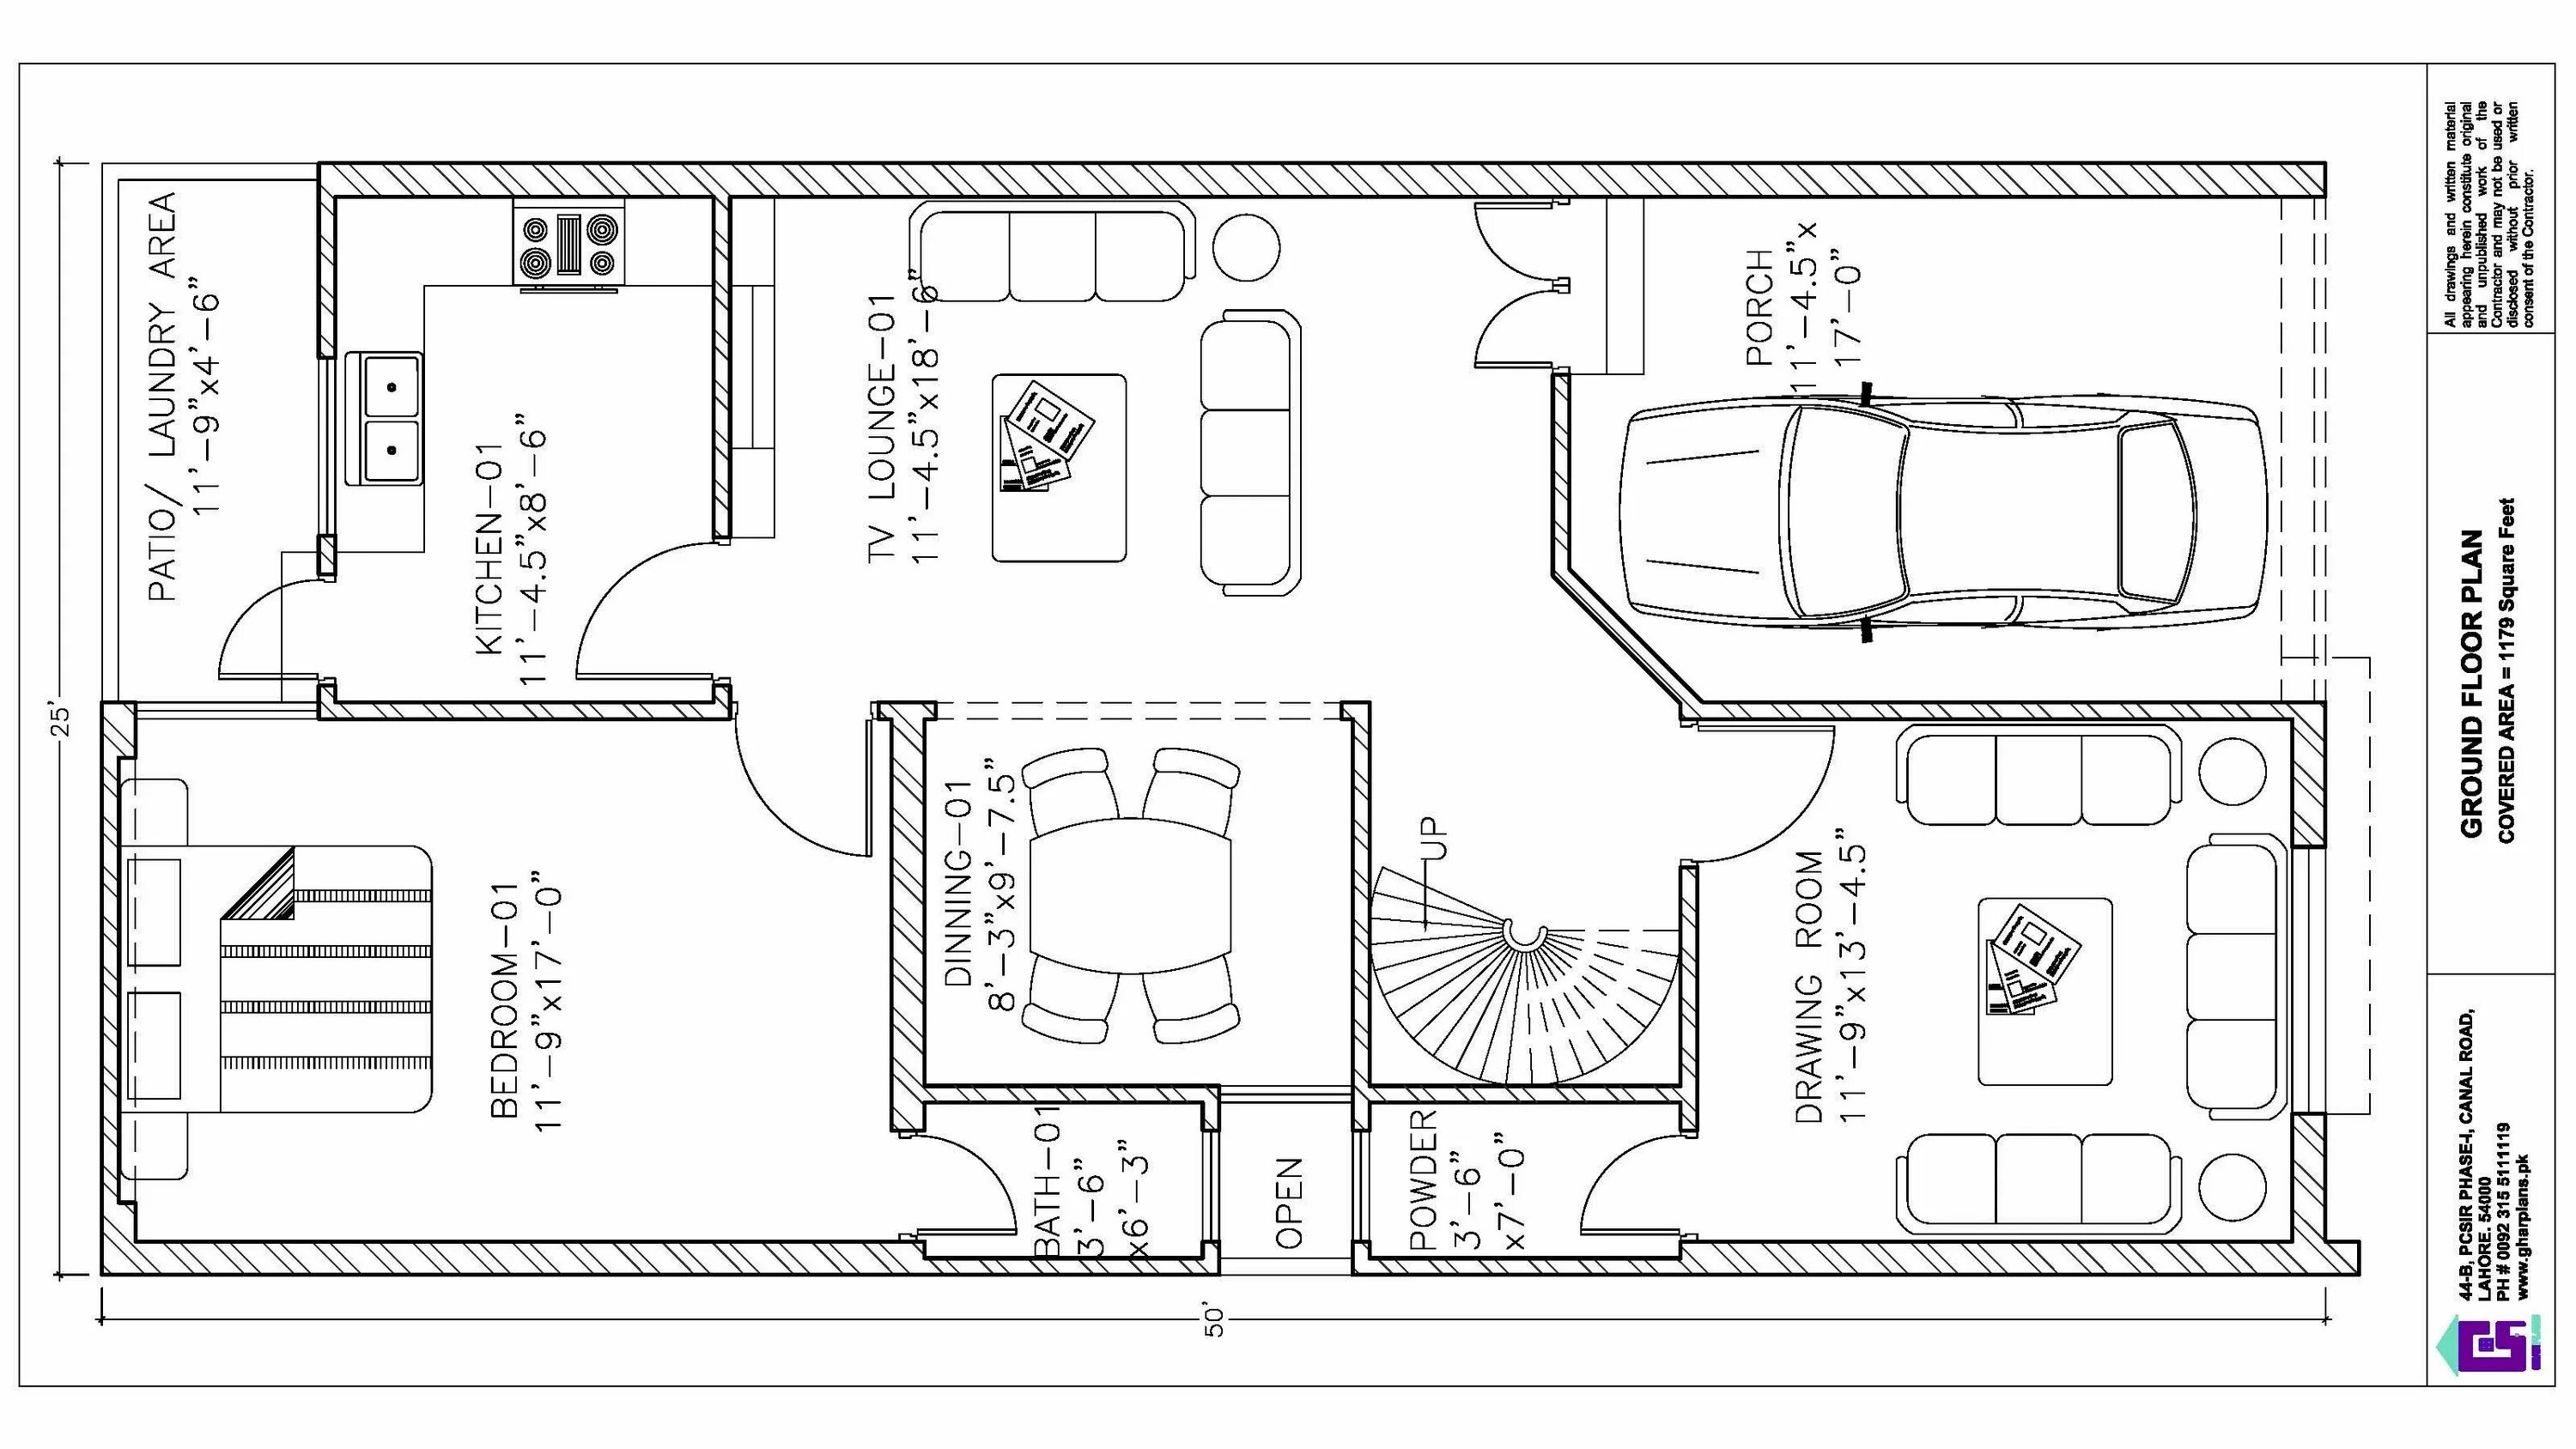 Plan 50. House Floor Plan Layout. Стильный дизайн план схема базы отдыха. Стильная Графика план базы отдыха. House Plan Floor Plan ESL.